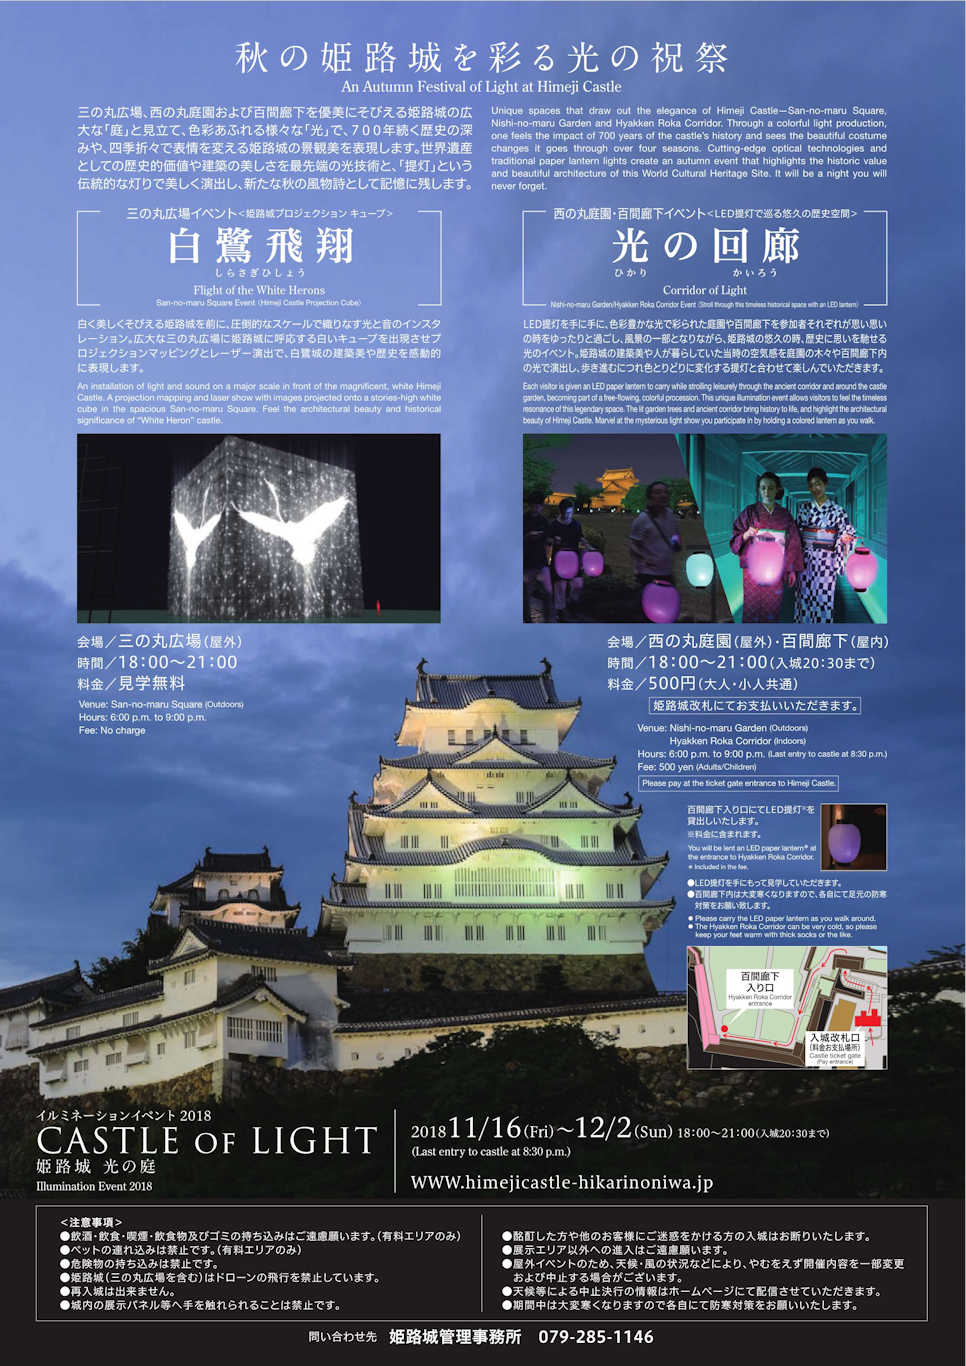 姫路城 光の庭 CASTLE OF LIGHT